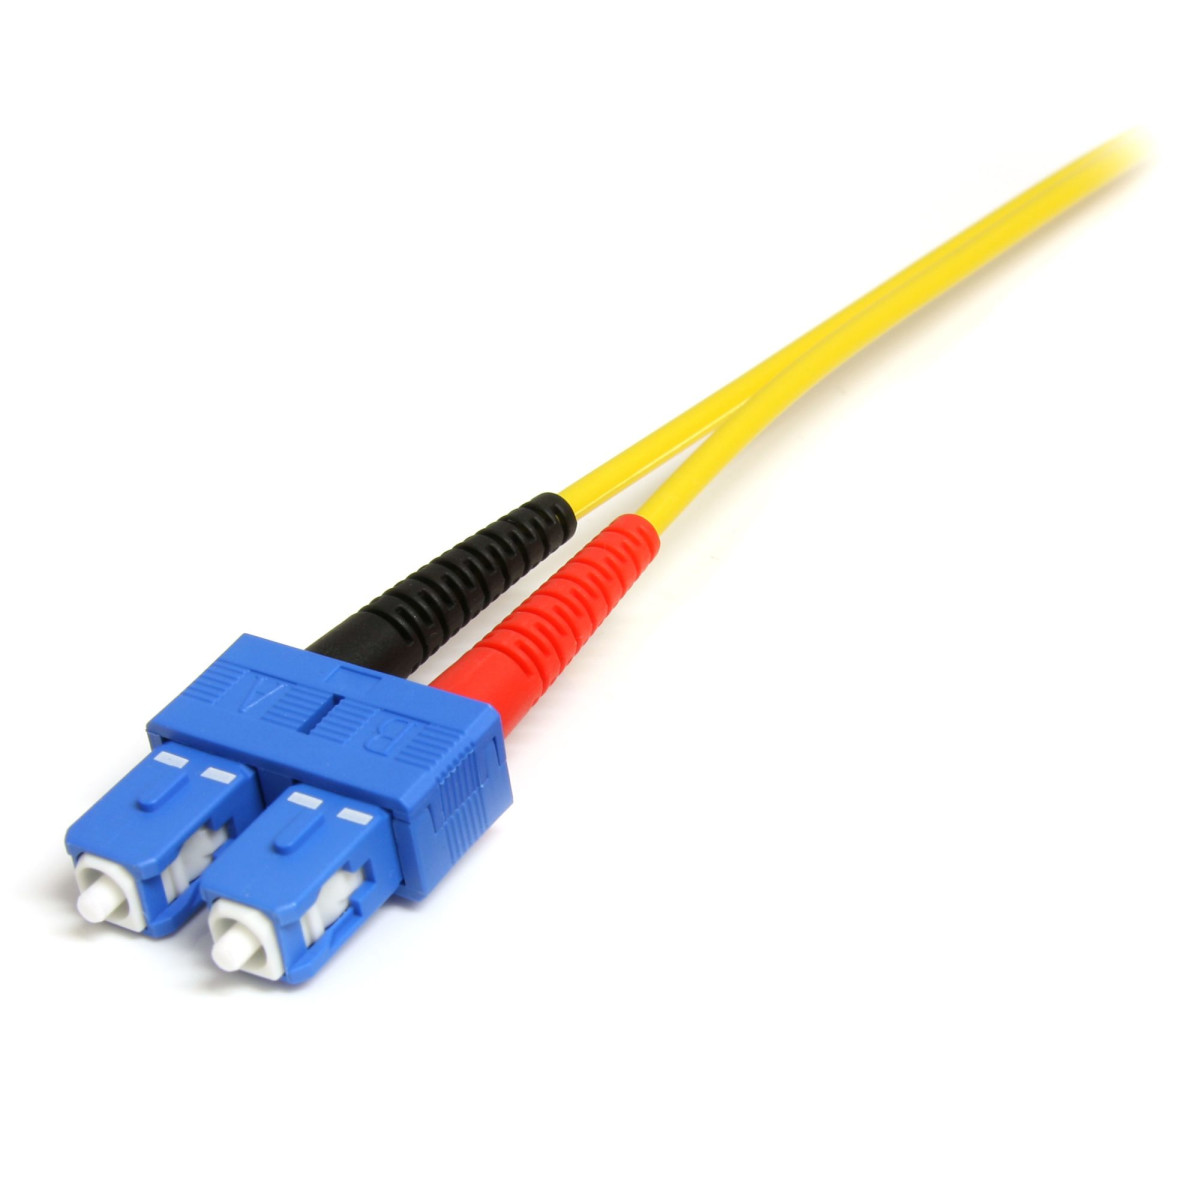 1m Single Mode Duplex Fiber Patch Cable